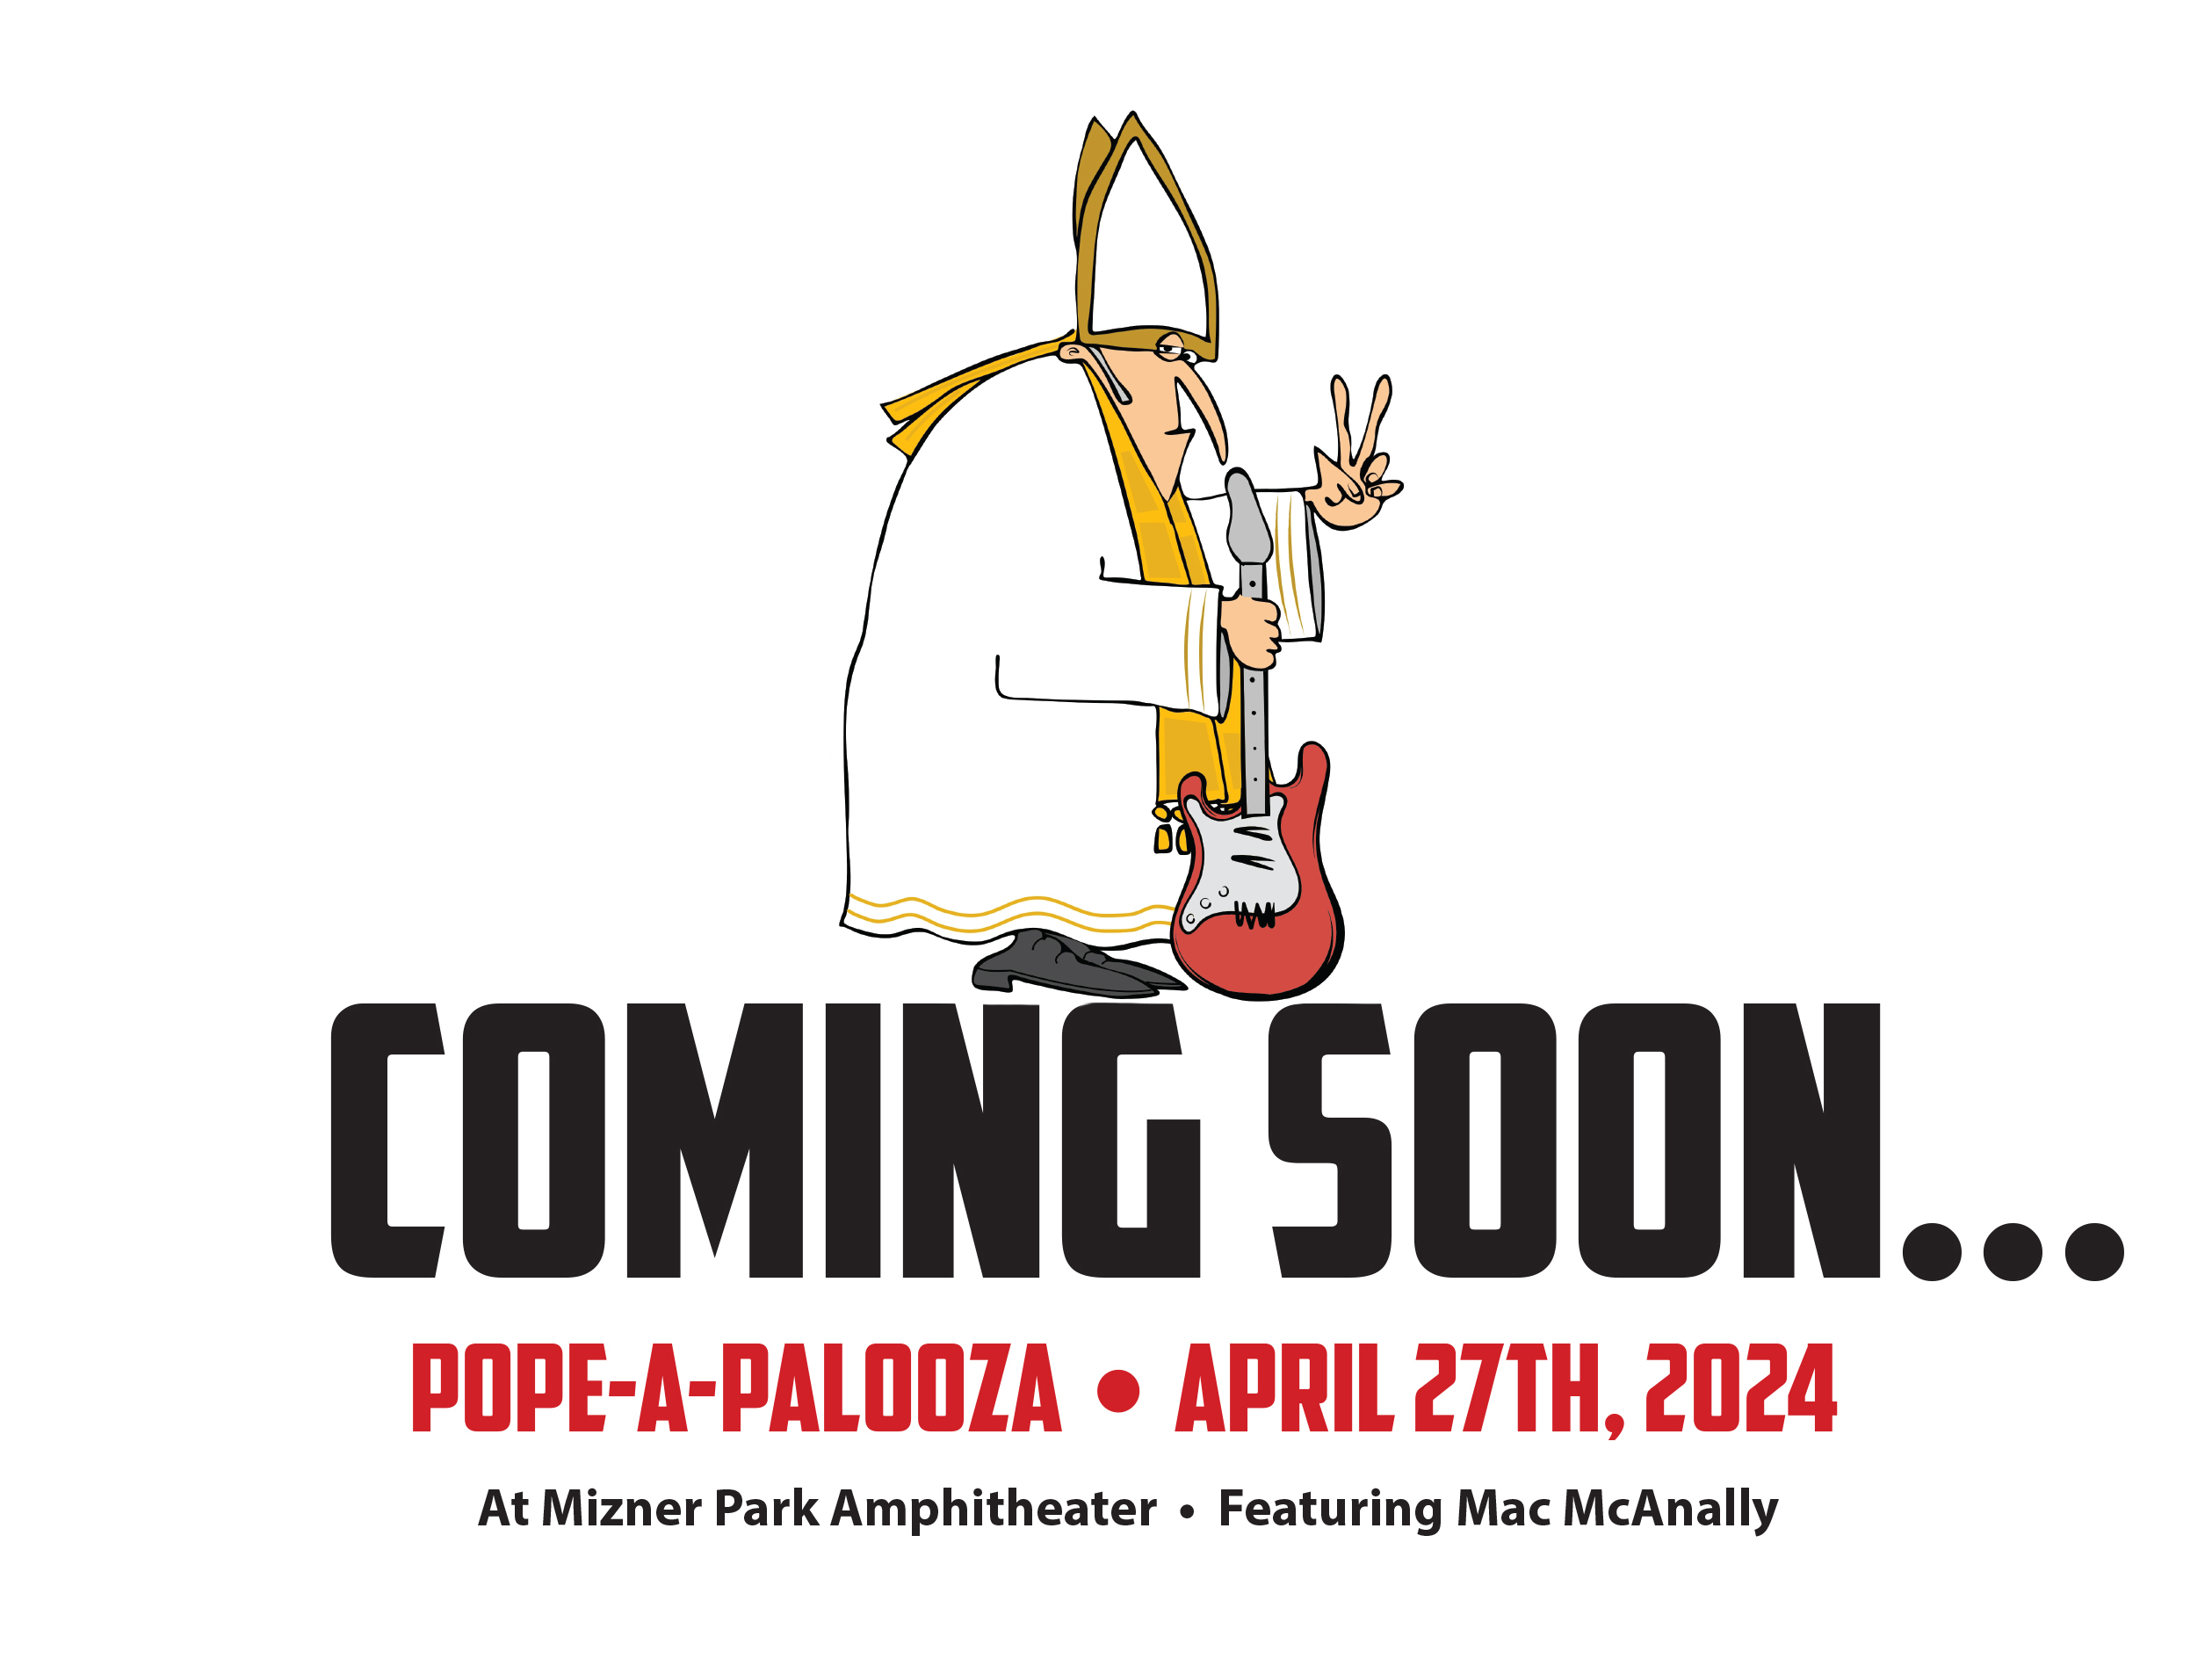 Pope-A-Palooza • April 27th, 2024